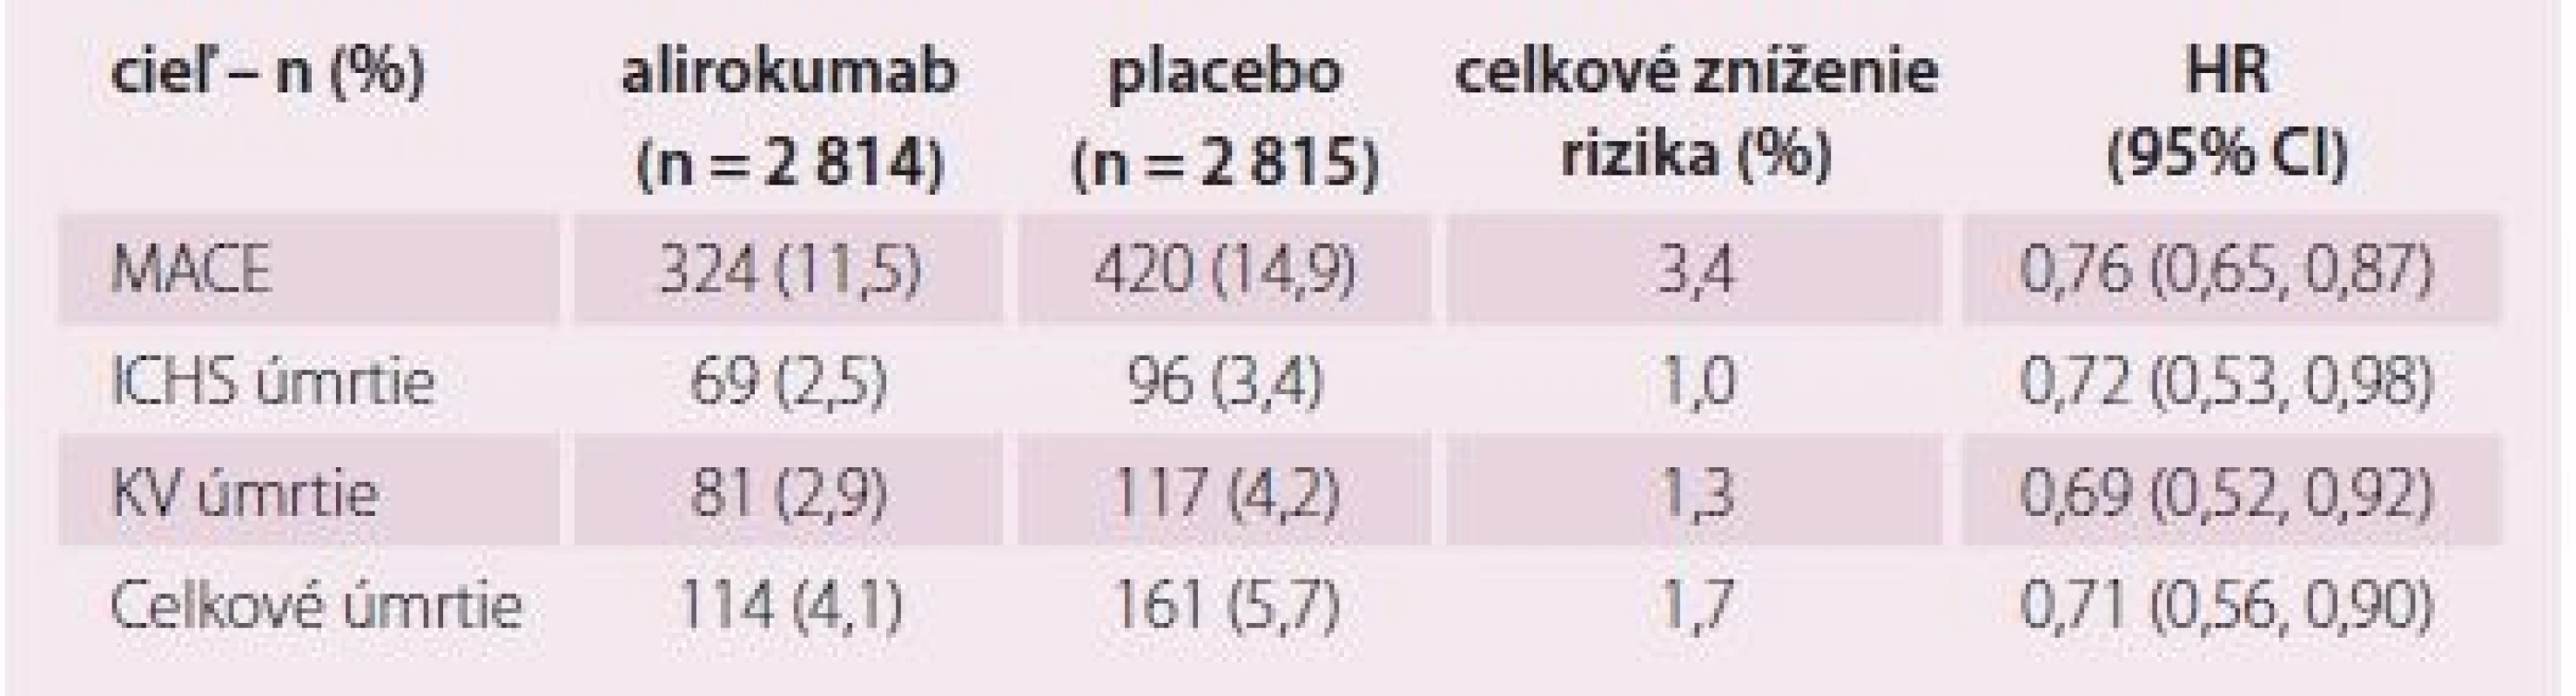 Účinnosť při LDL-c ≥ 2,6 mmol/l.